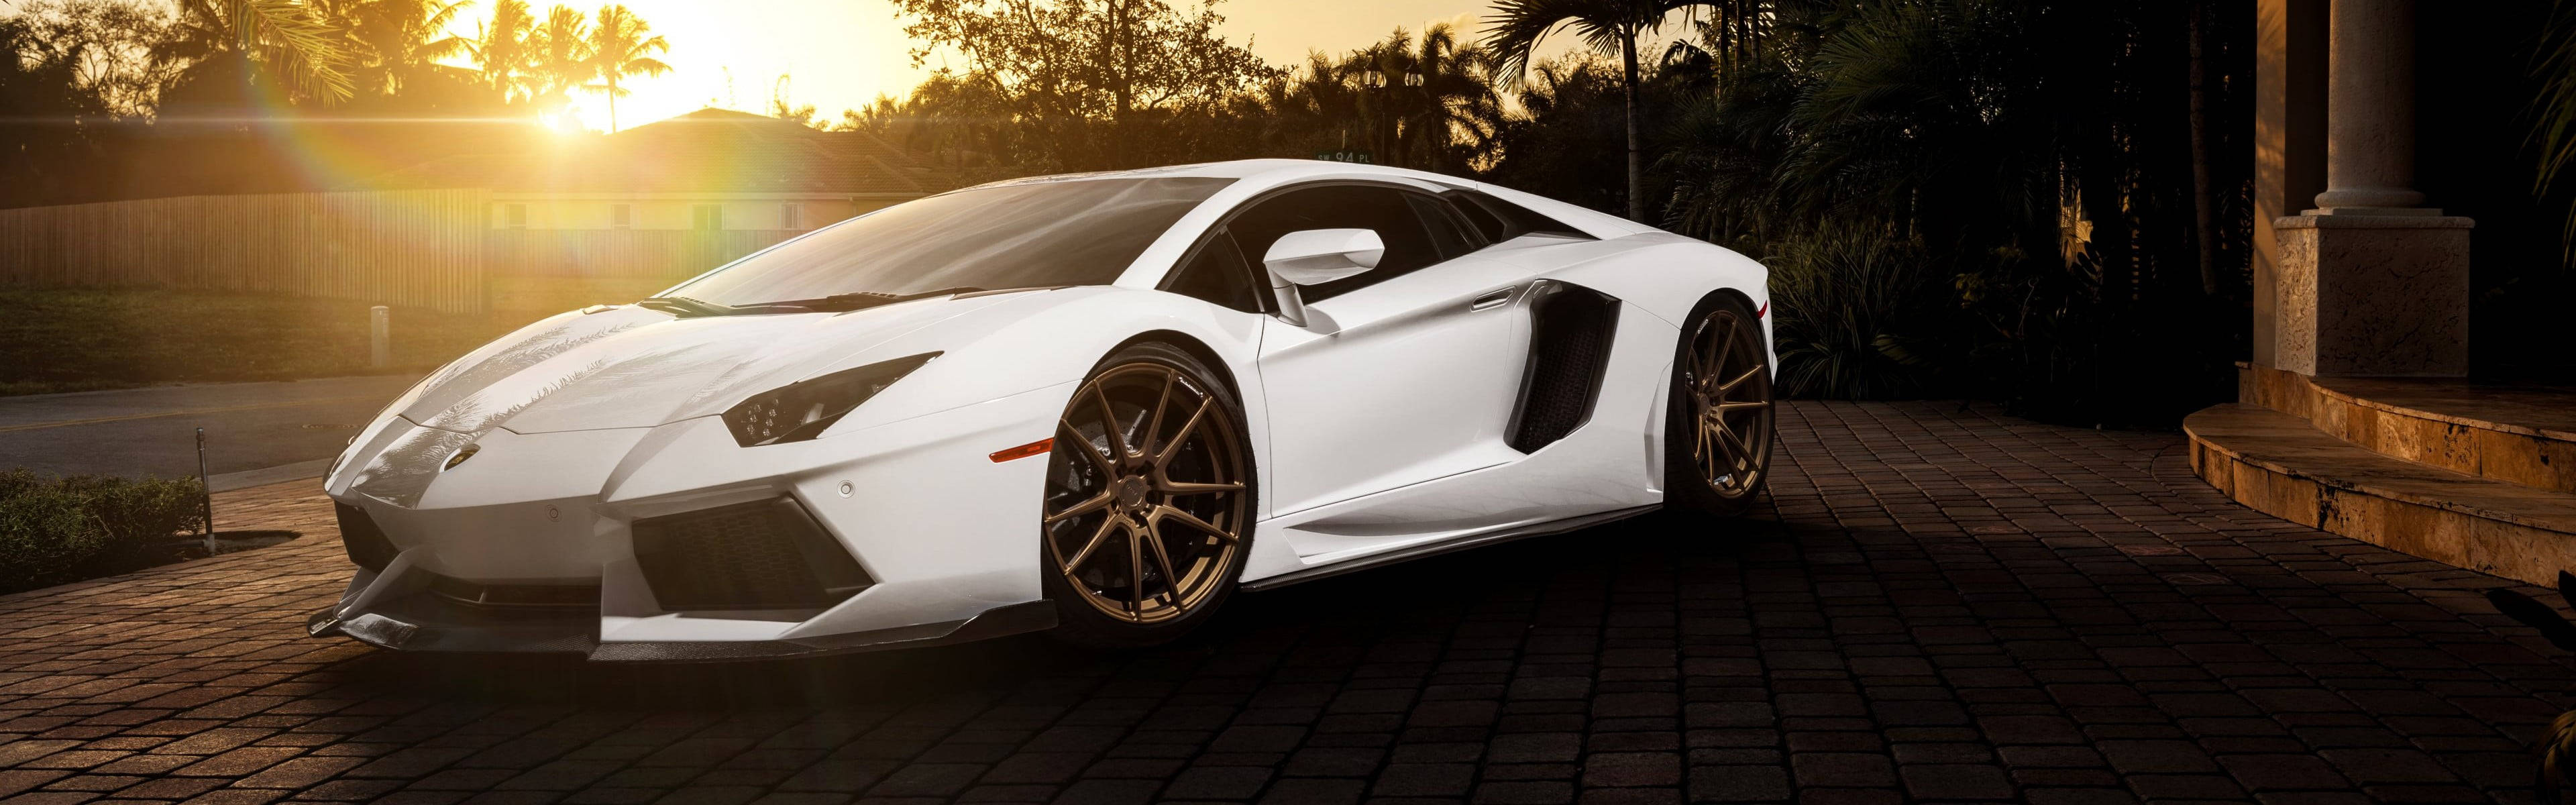 Caption: Unleashed Luxury - Lamborghini Aventador Sports Car Background